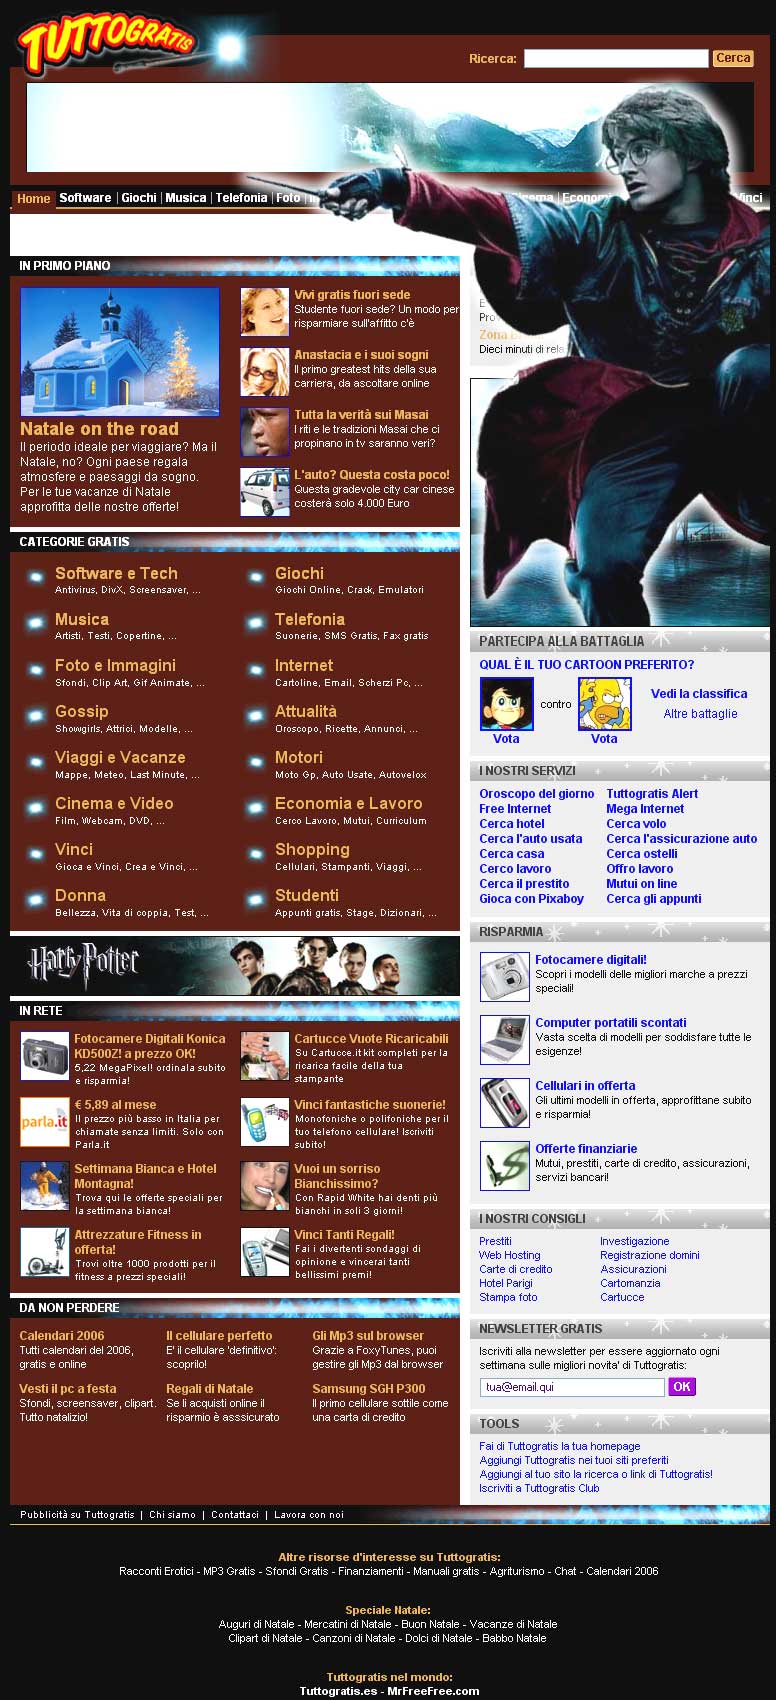 Il portale personalizza la propria homepage per il debutto nelle sale 

del nuovo episodio della saga del maghetto più famoso al mondo